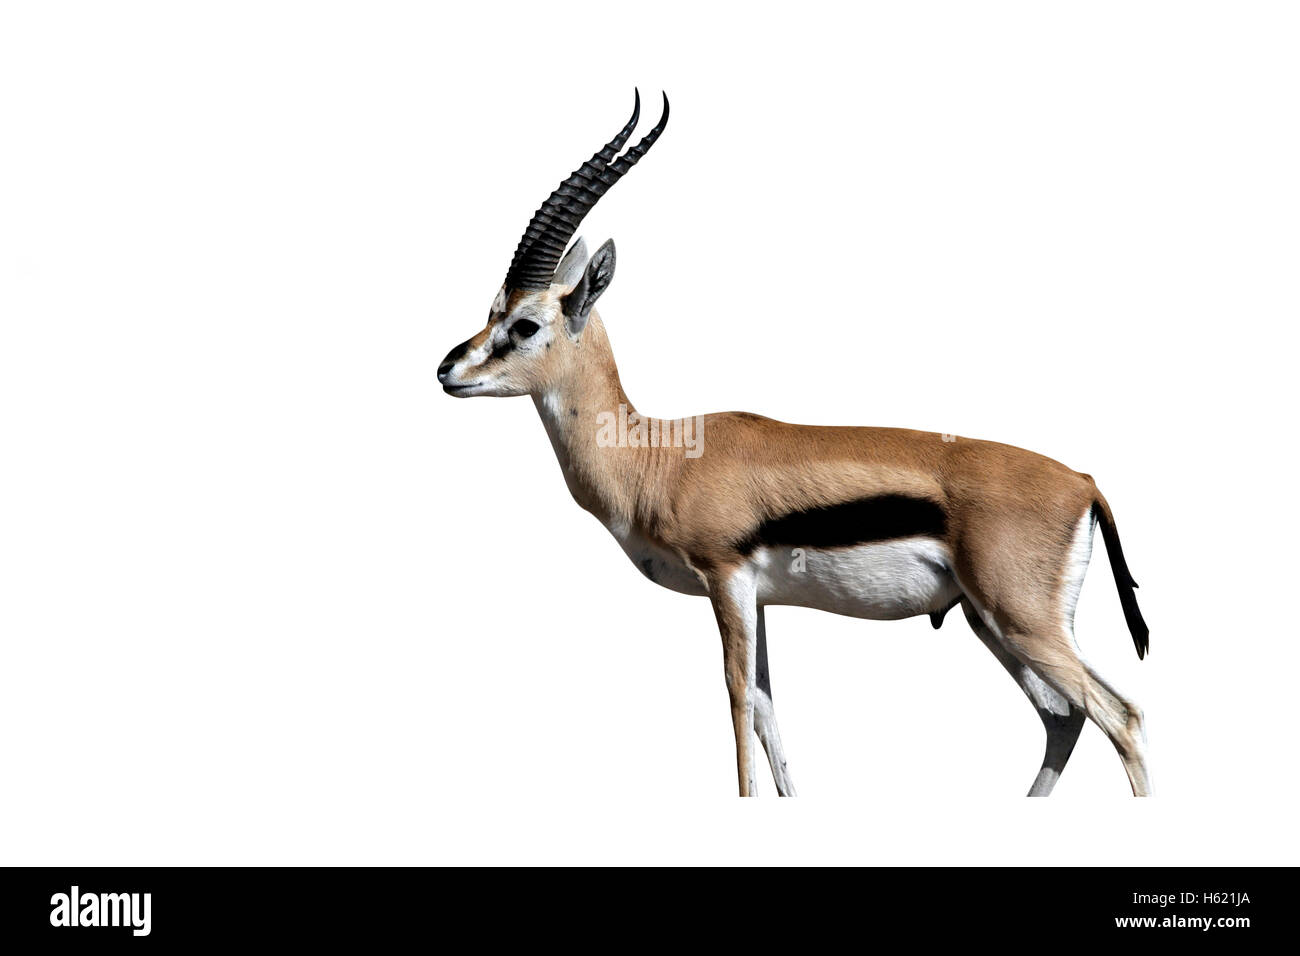 Thomson's gazelle, Gazella thomsonii, single mammal on grass, Tanzania Stock Photo